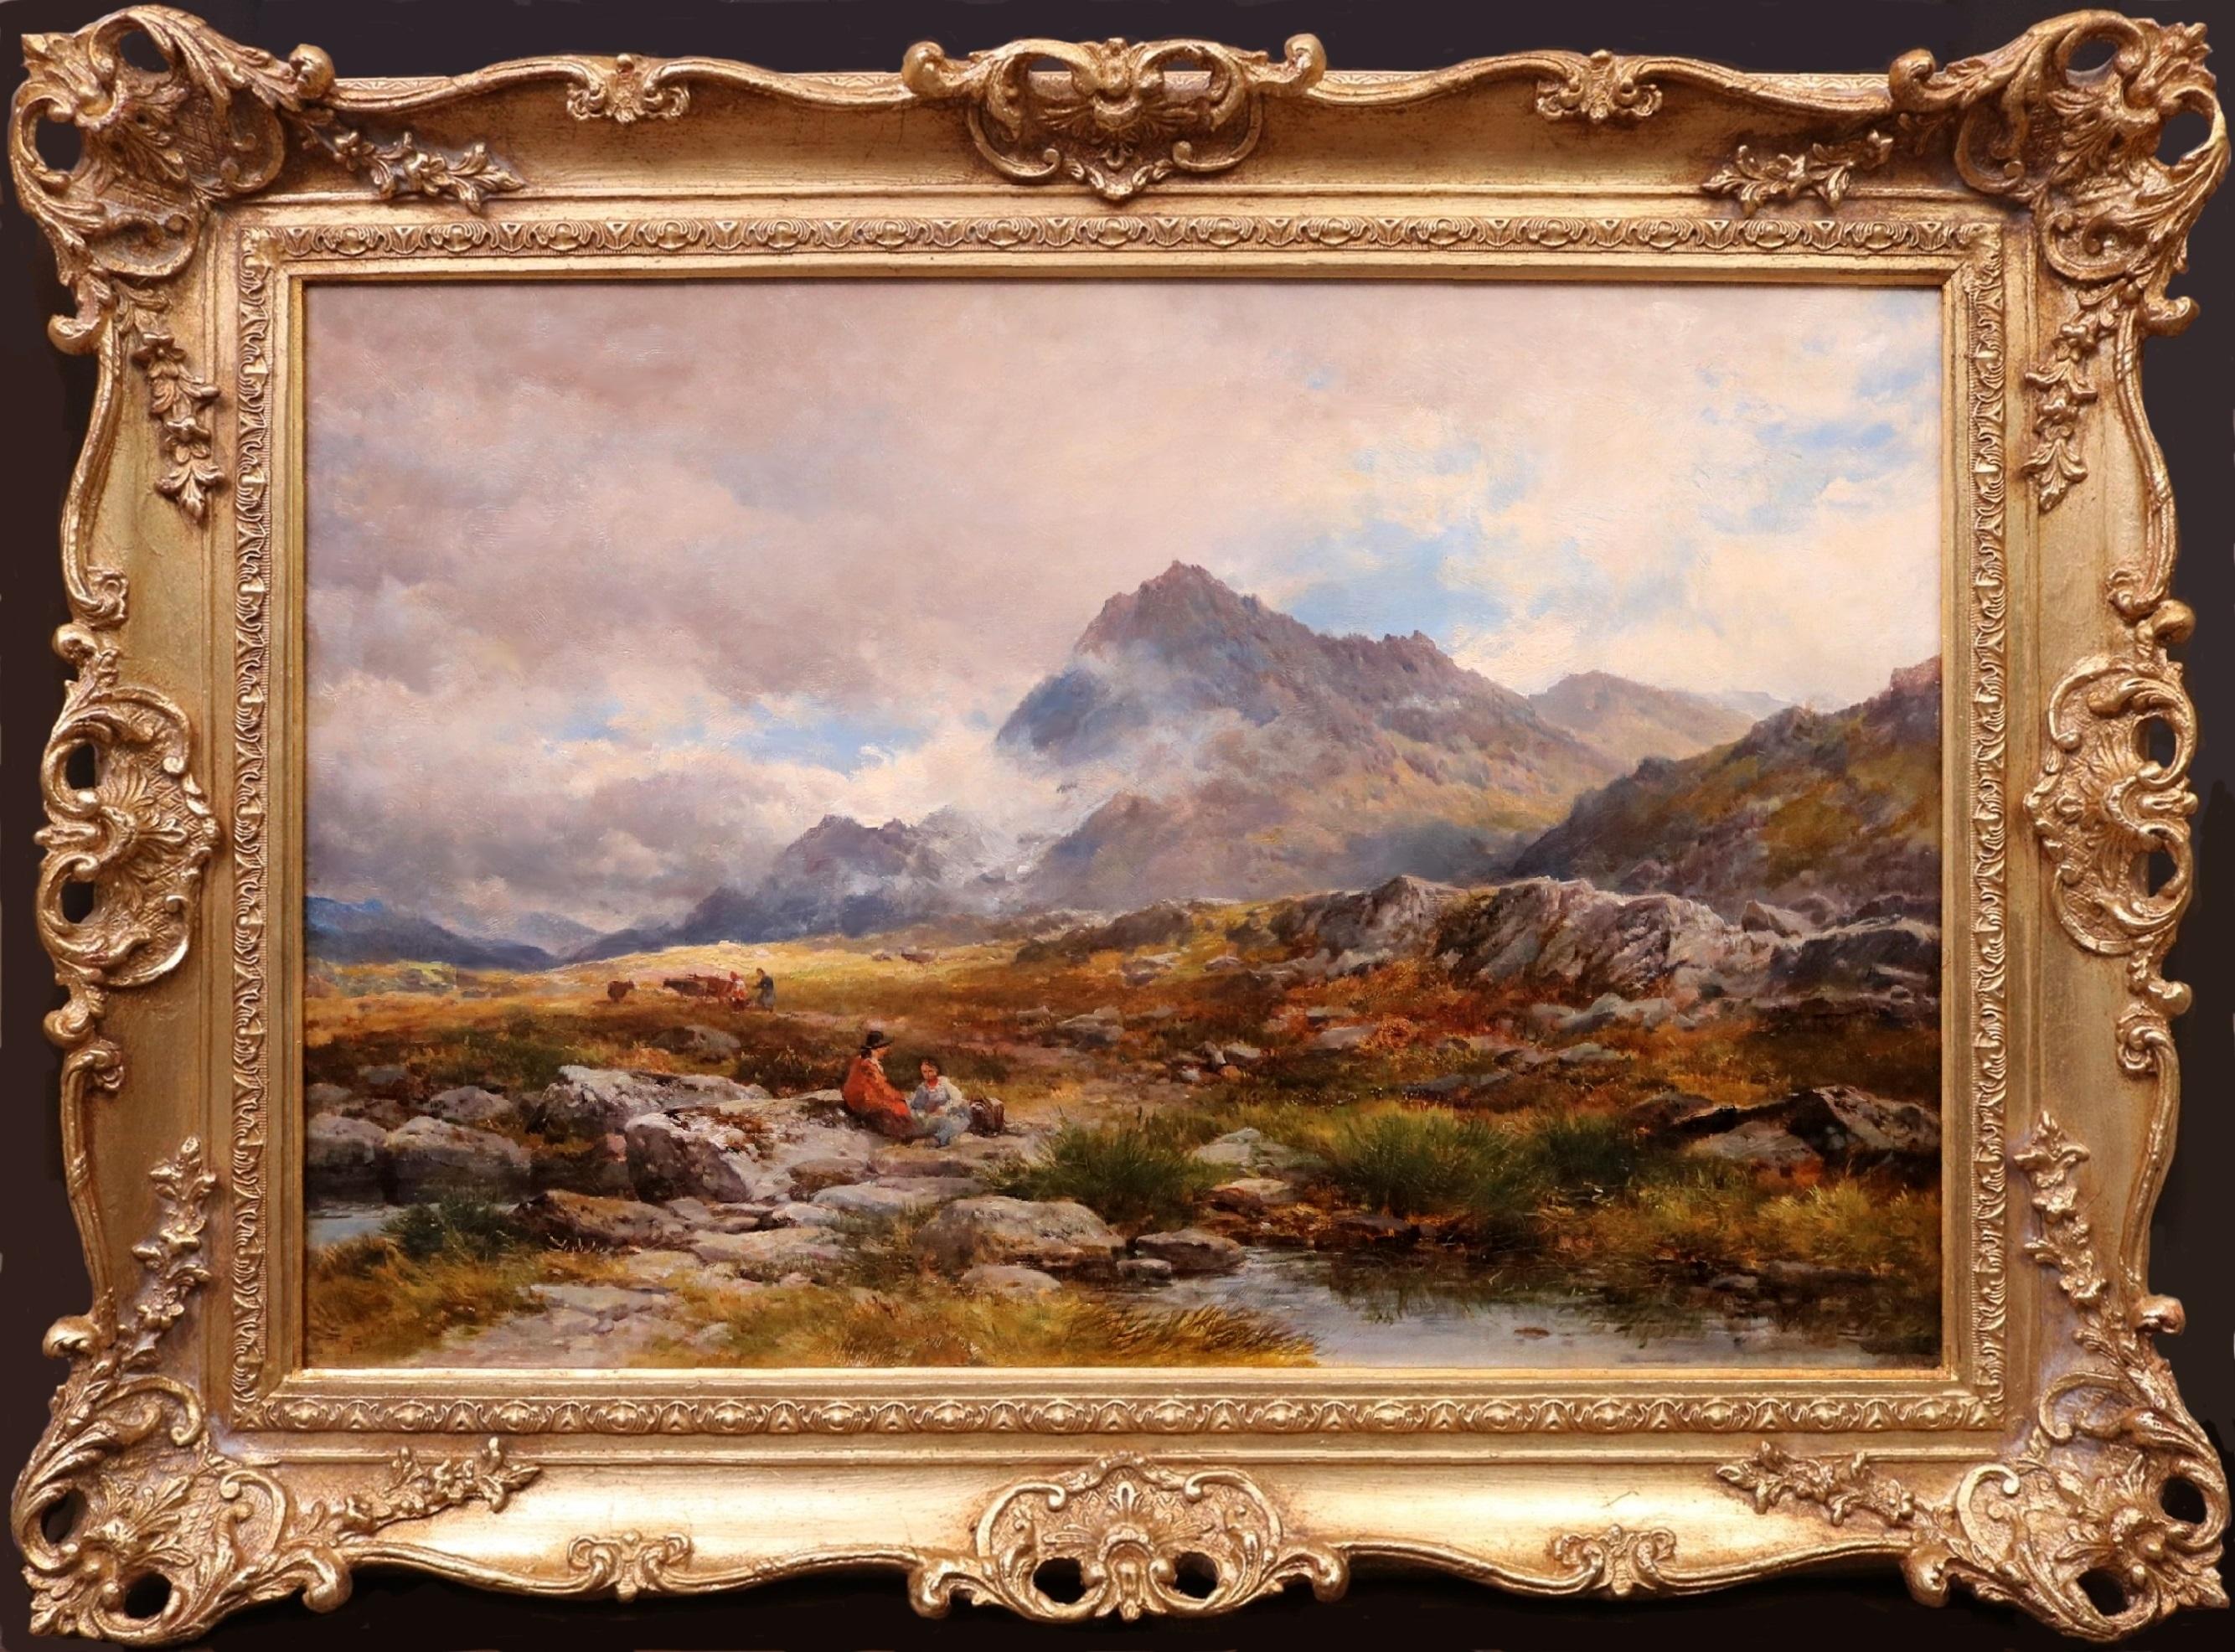 Avant Glyder Fawr - Grande peinture à l'huile du 19e siècle - Paysage de montagnes galloises  - Painting de John Syer